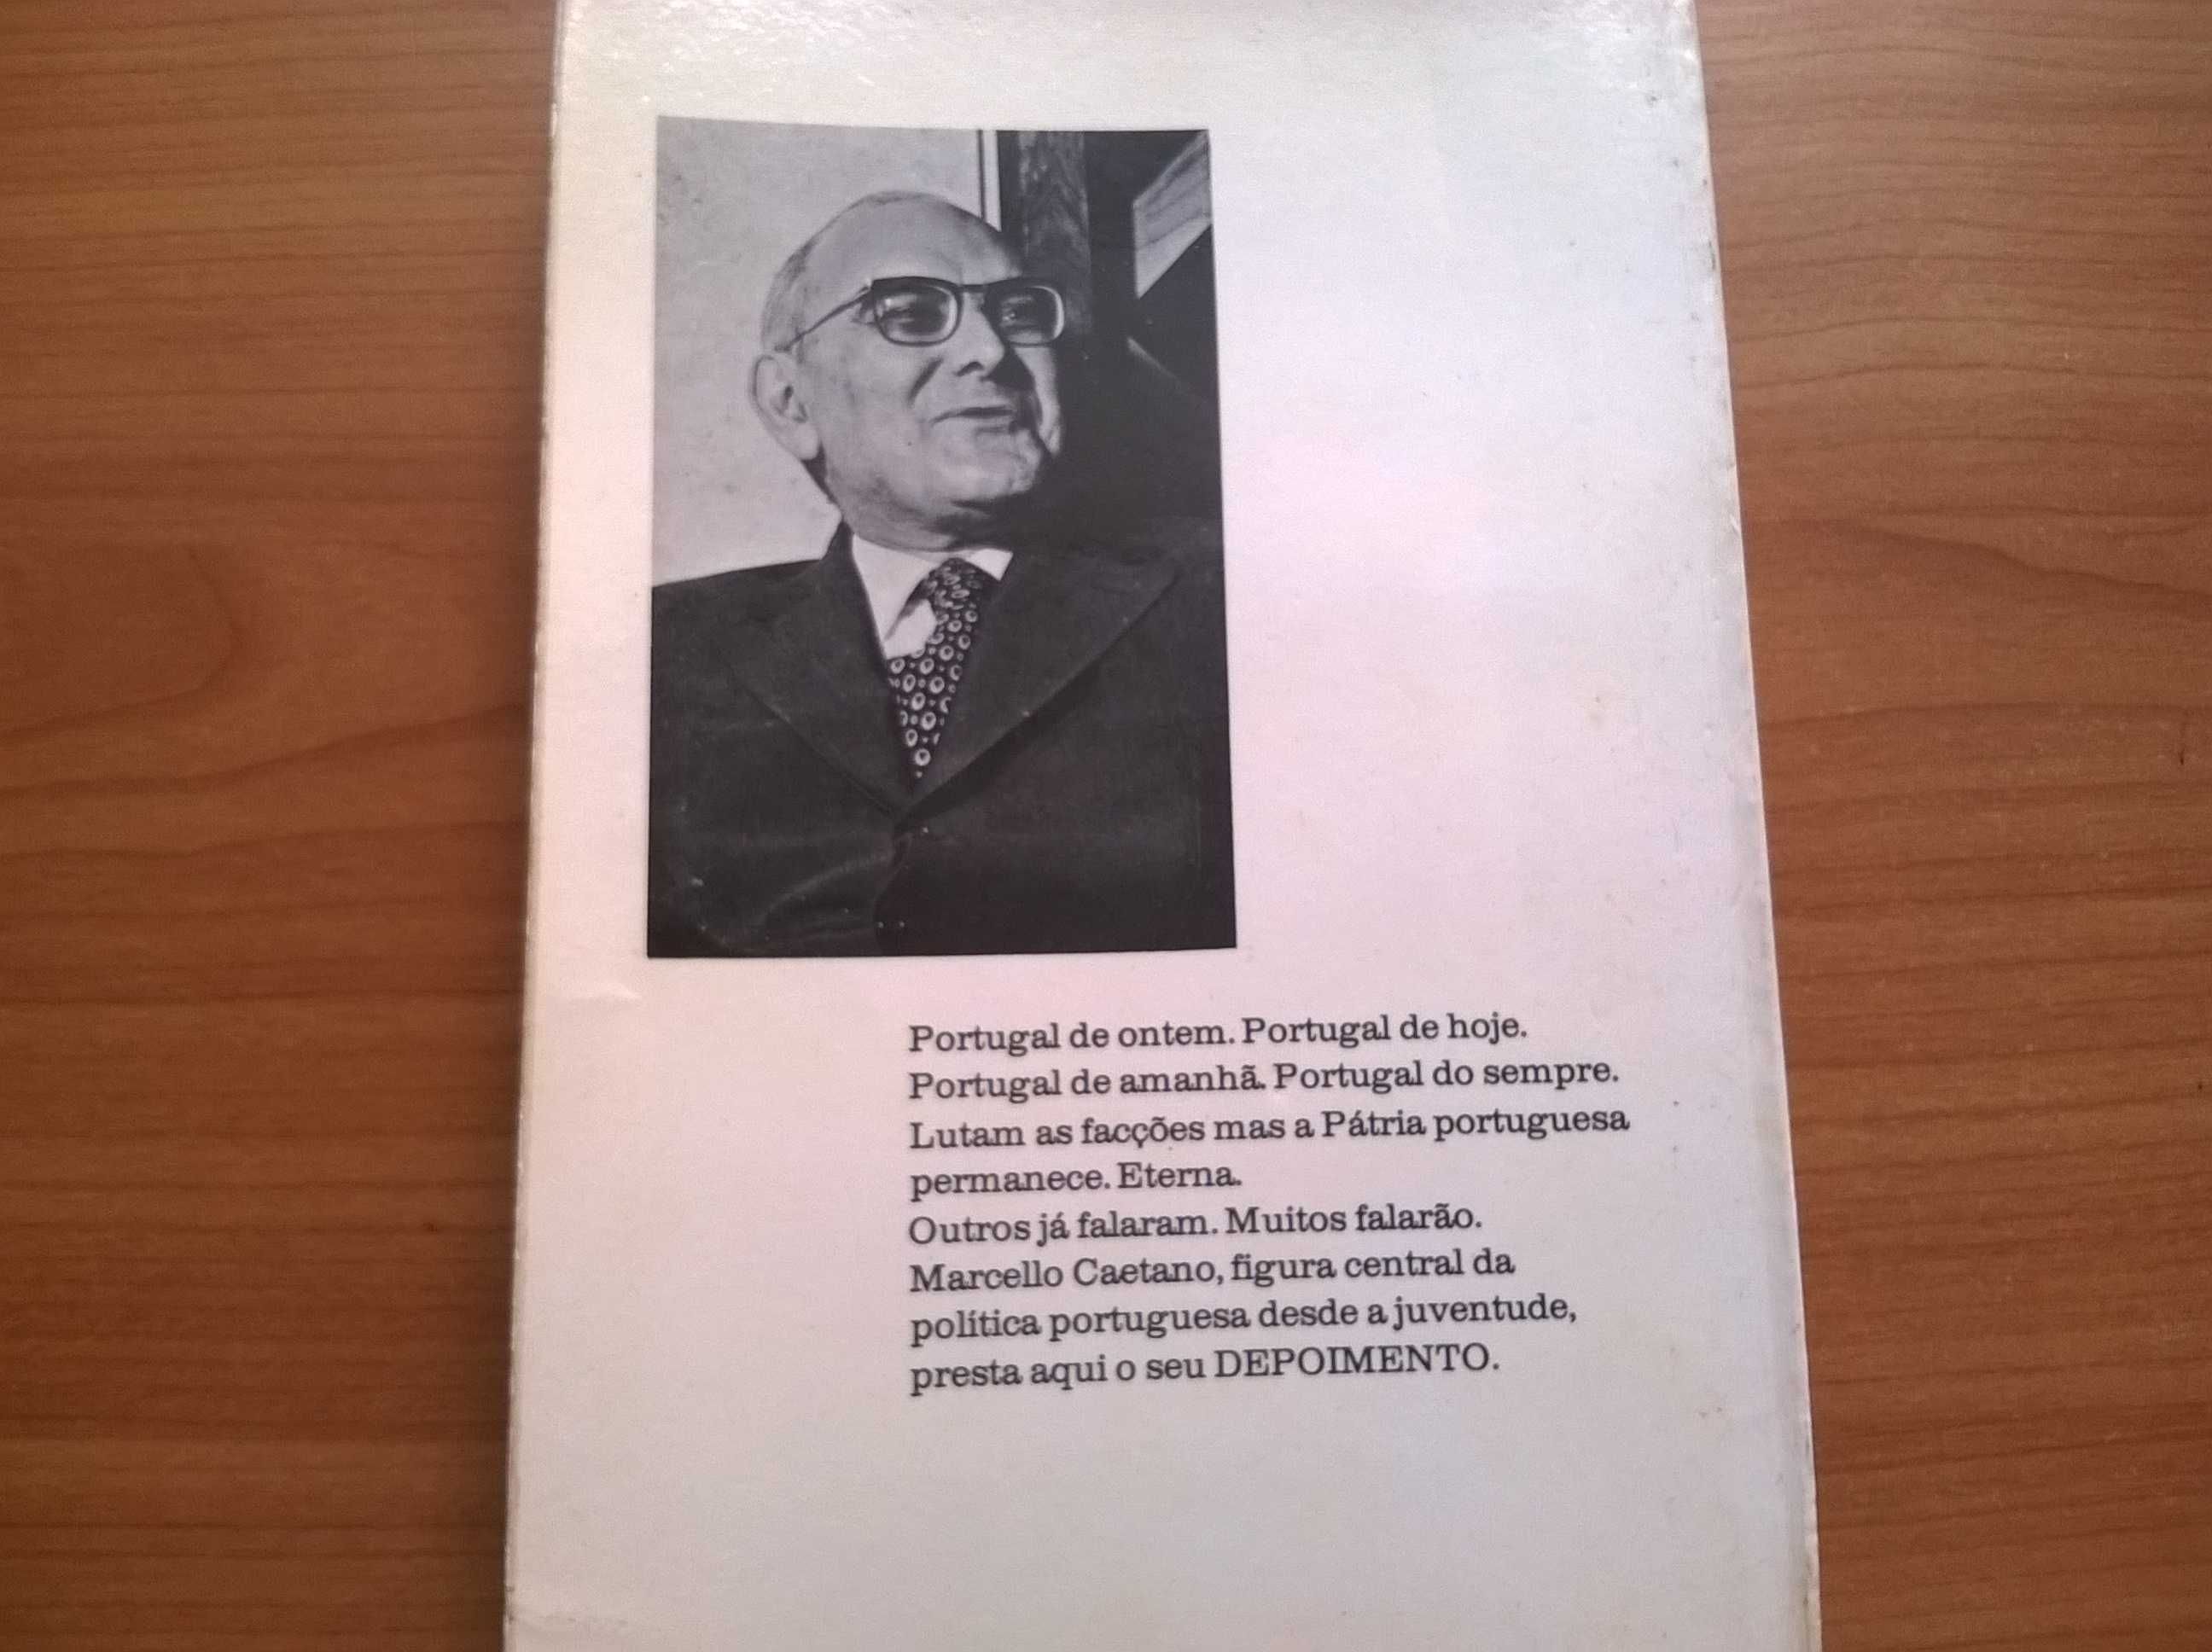 Depoimento (1.ª ed.) - Marcello Caetano (portes grátis)